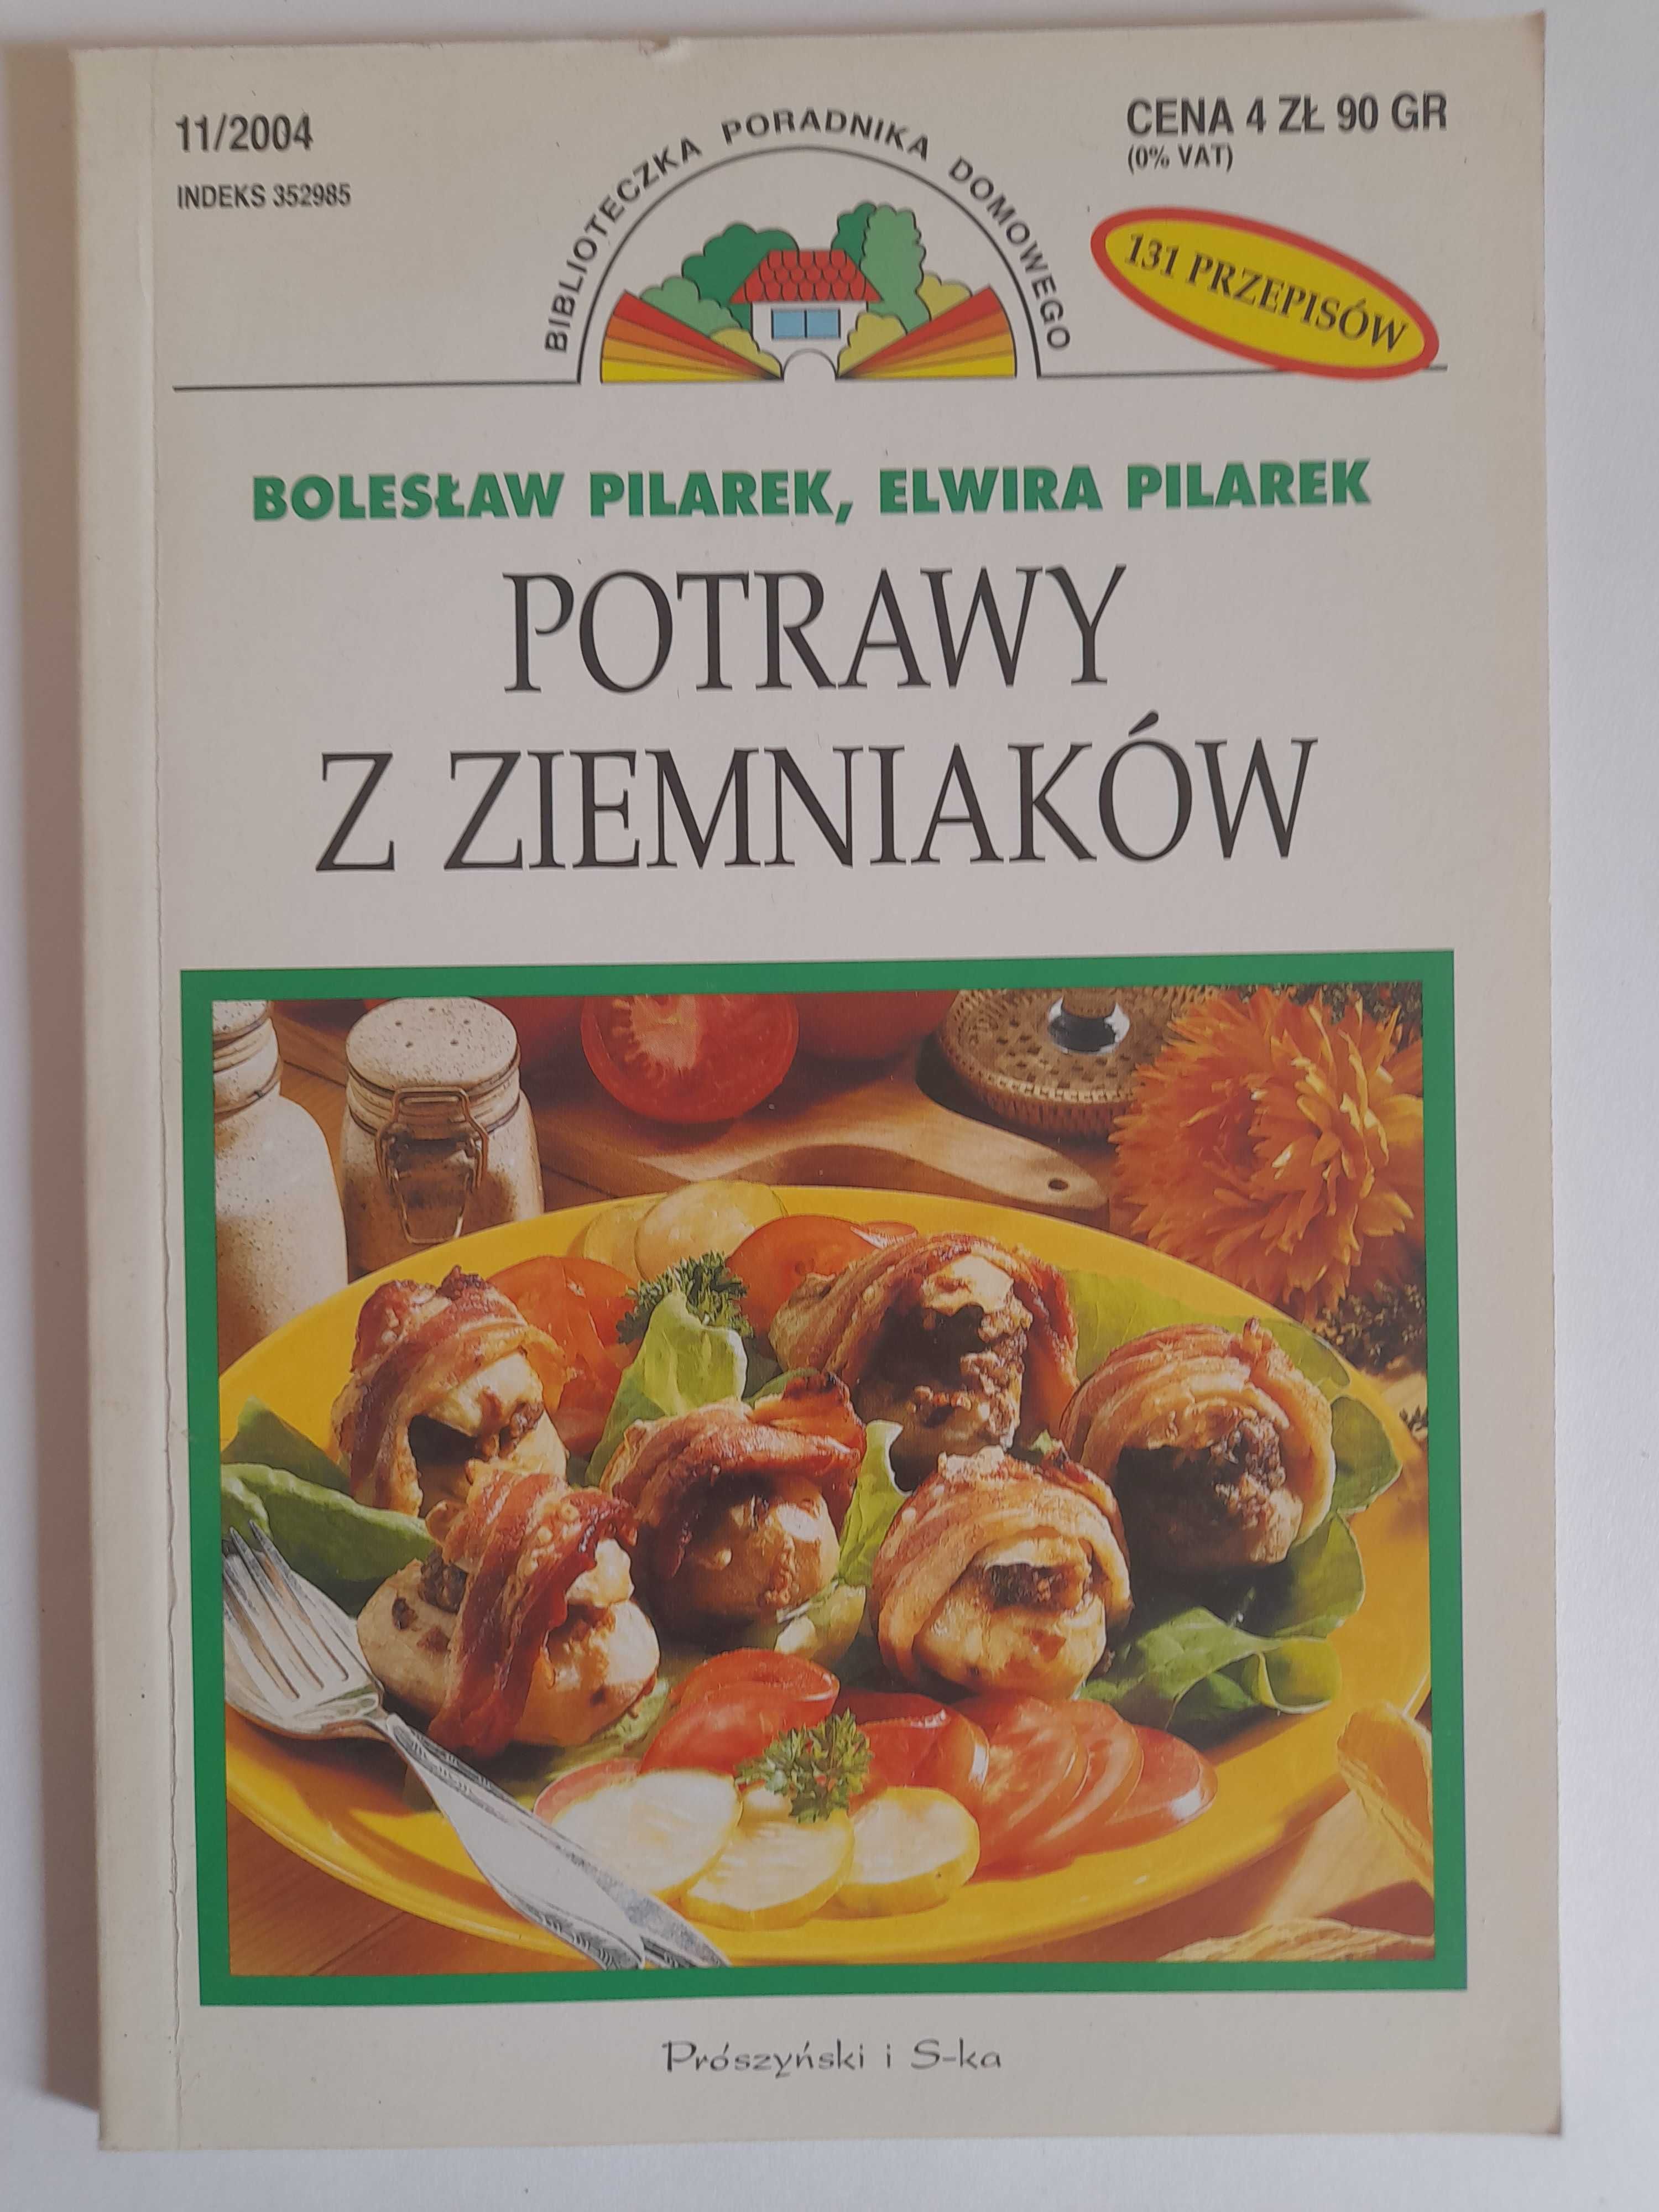 Potrawy z ziemniaków. 131 przepisów - Bolesław Pilarek